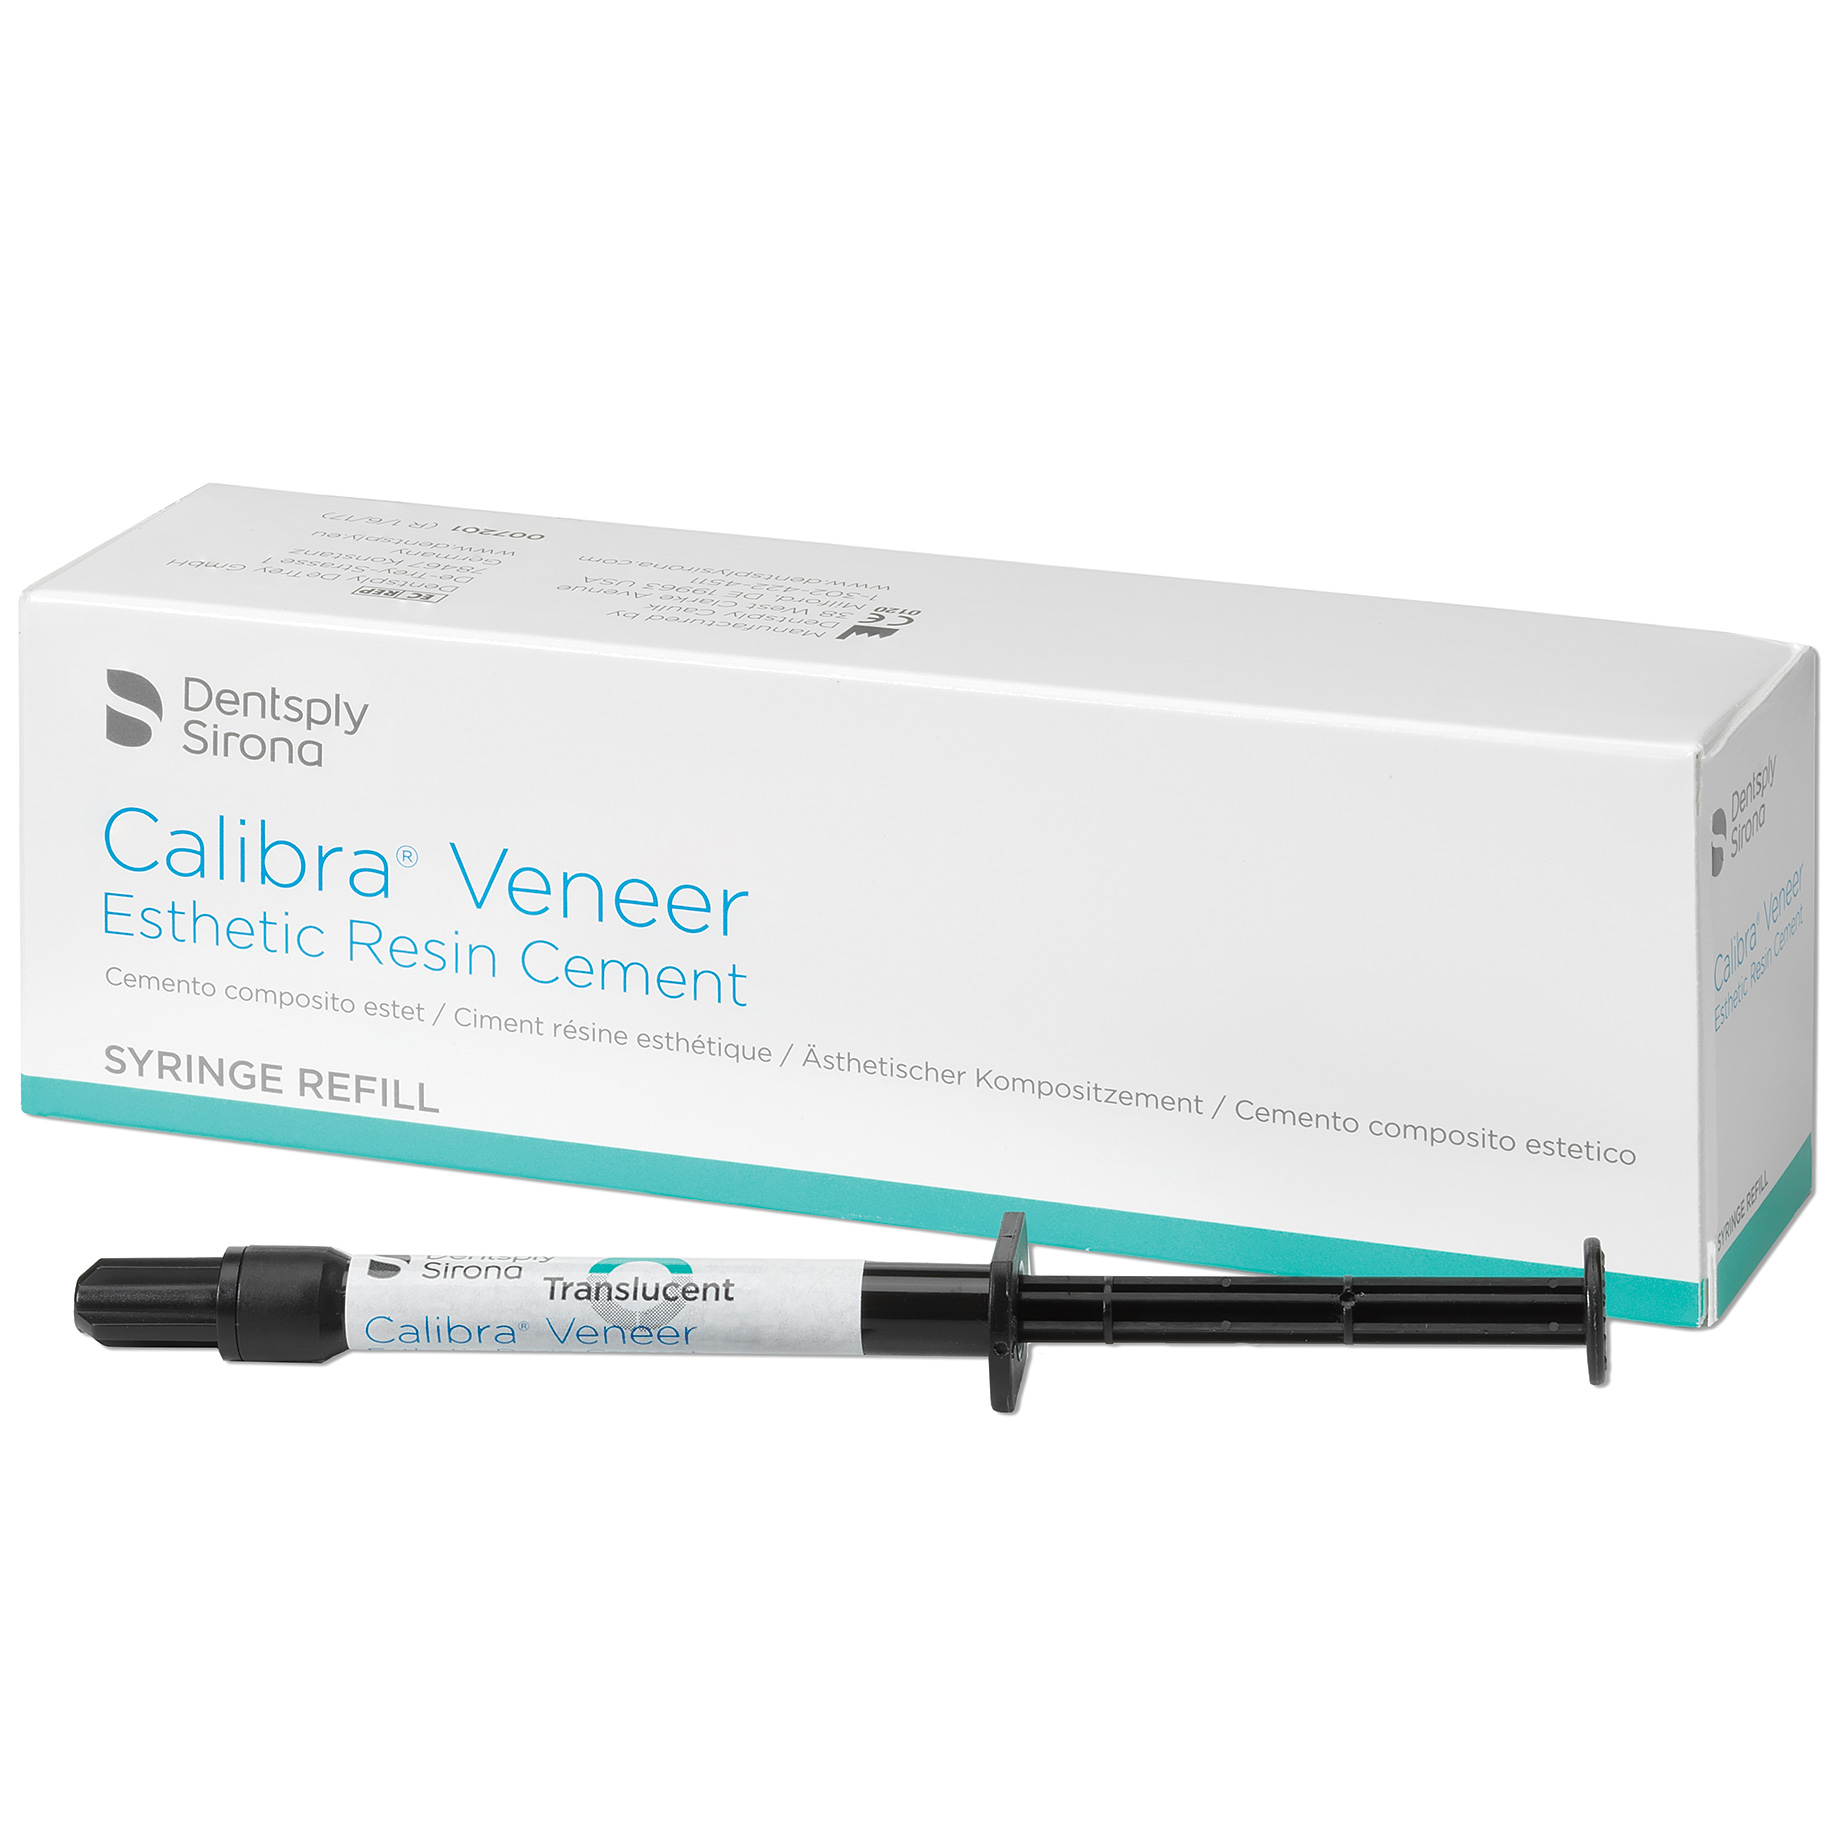 FWD064 : Calibra Veneer Refill Translucent